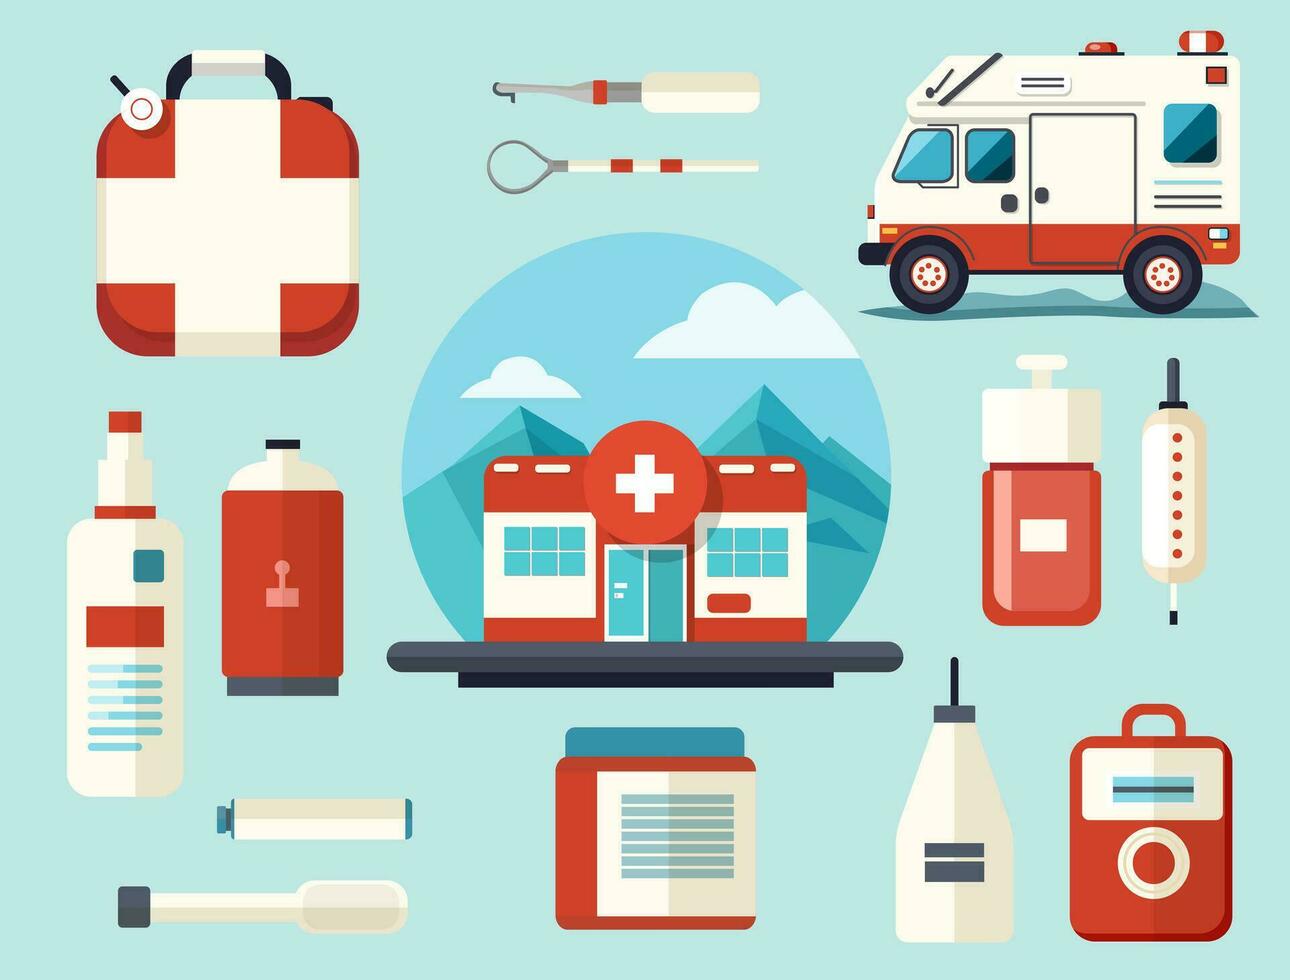 médico colocar. médico instrumentos, medicamento, ambulancia, hospital. vector dibujos animados plano medicamentos ilustración